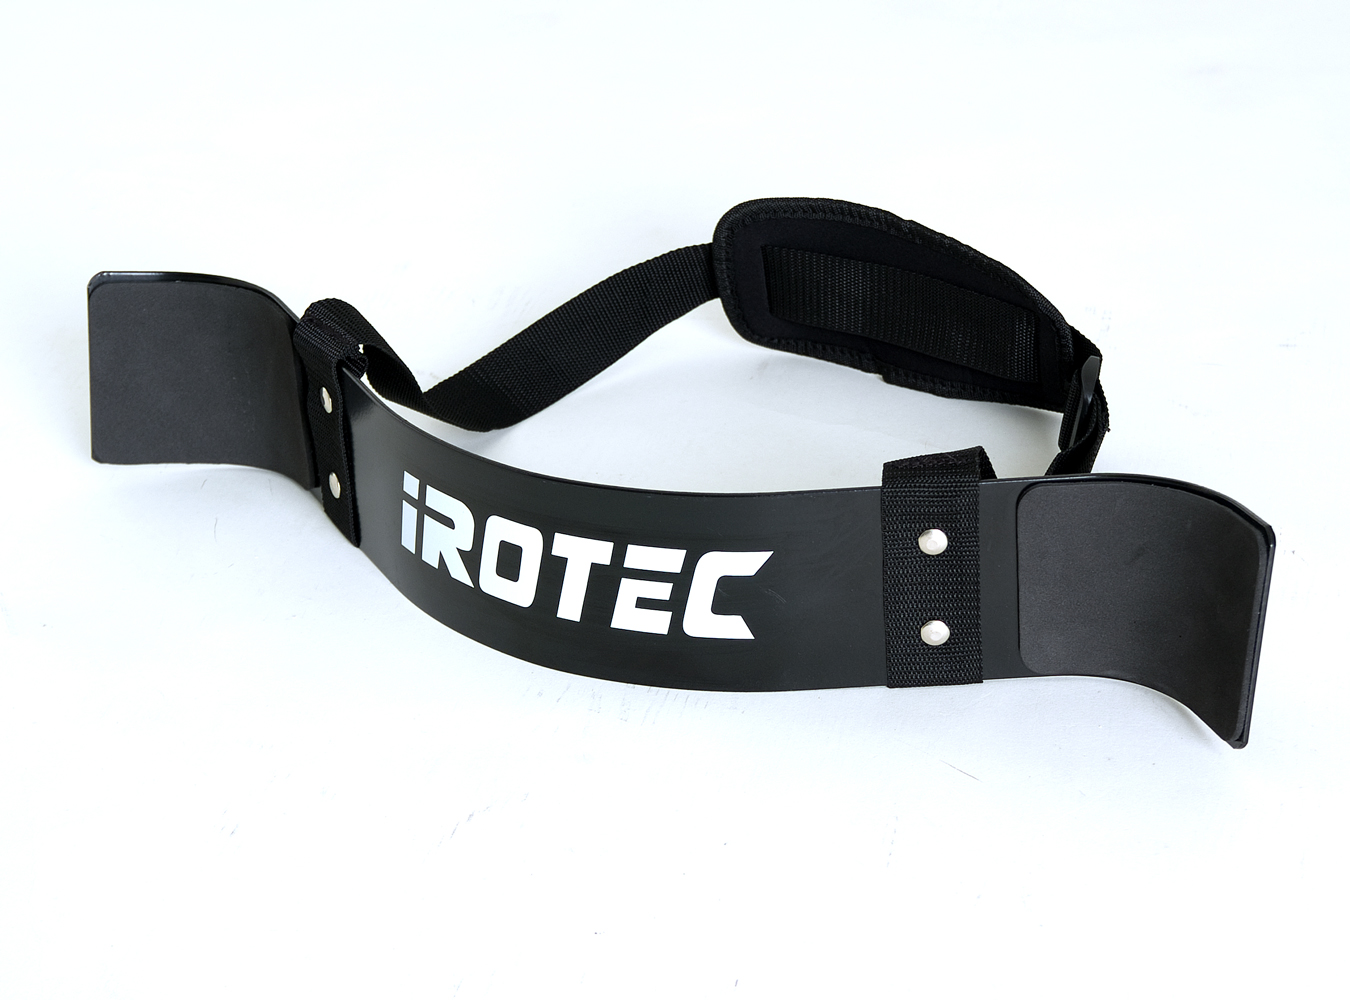 【楽天市場】【25日はポイントアップDAY】IROTEC(アイロテック)アームカールストロング/バーベル ダンベル 筋トレ トレーニング器具